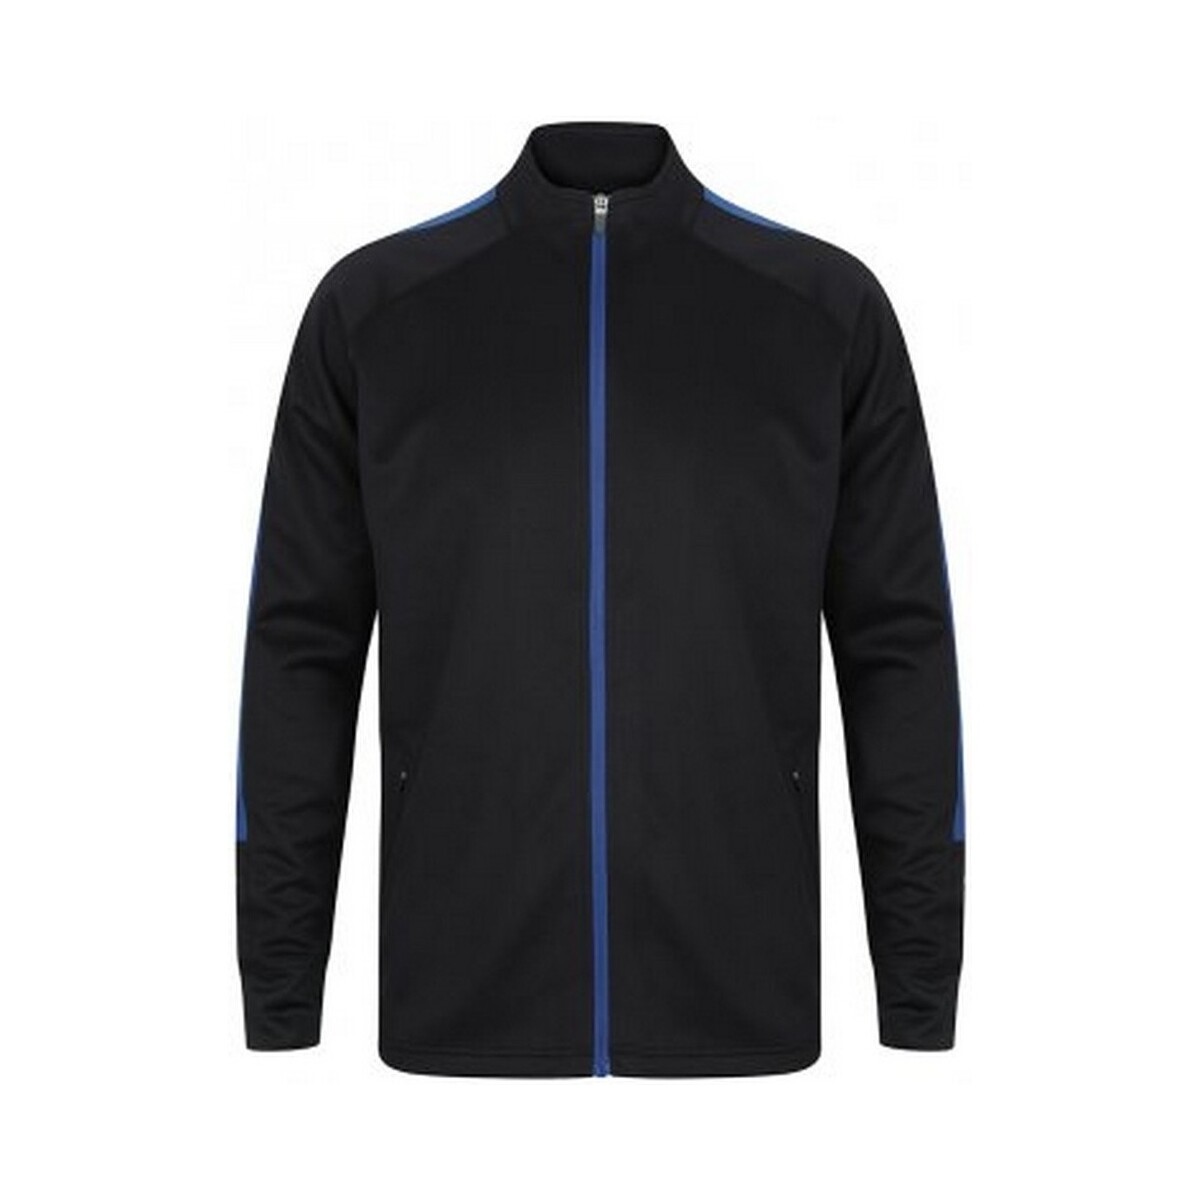 Vêtements Homme Sweats Finden & Hales PC3354 Bleu